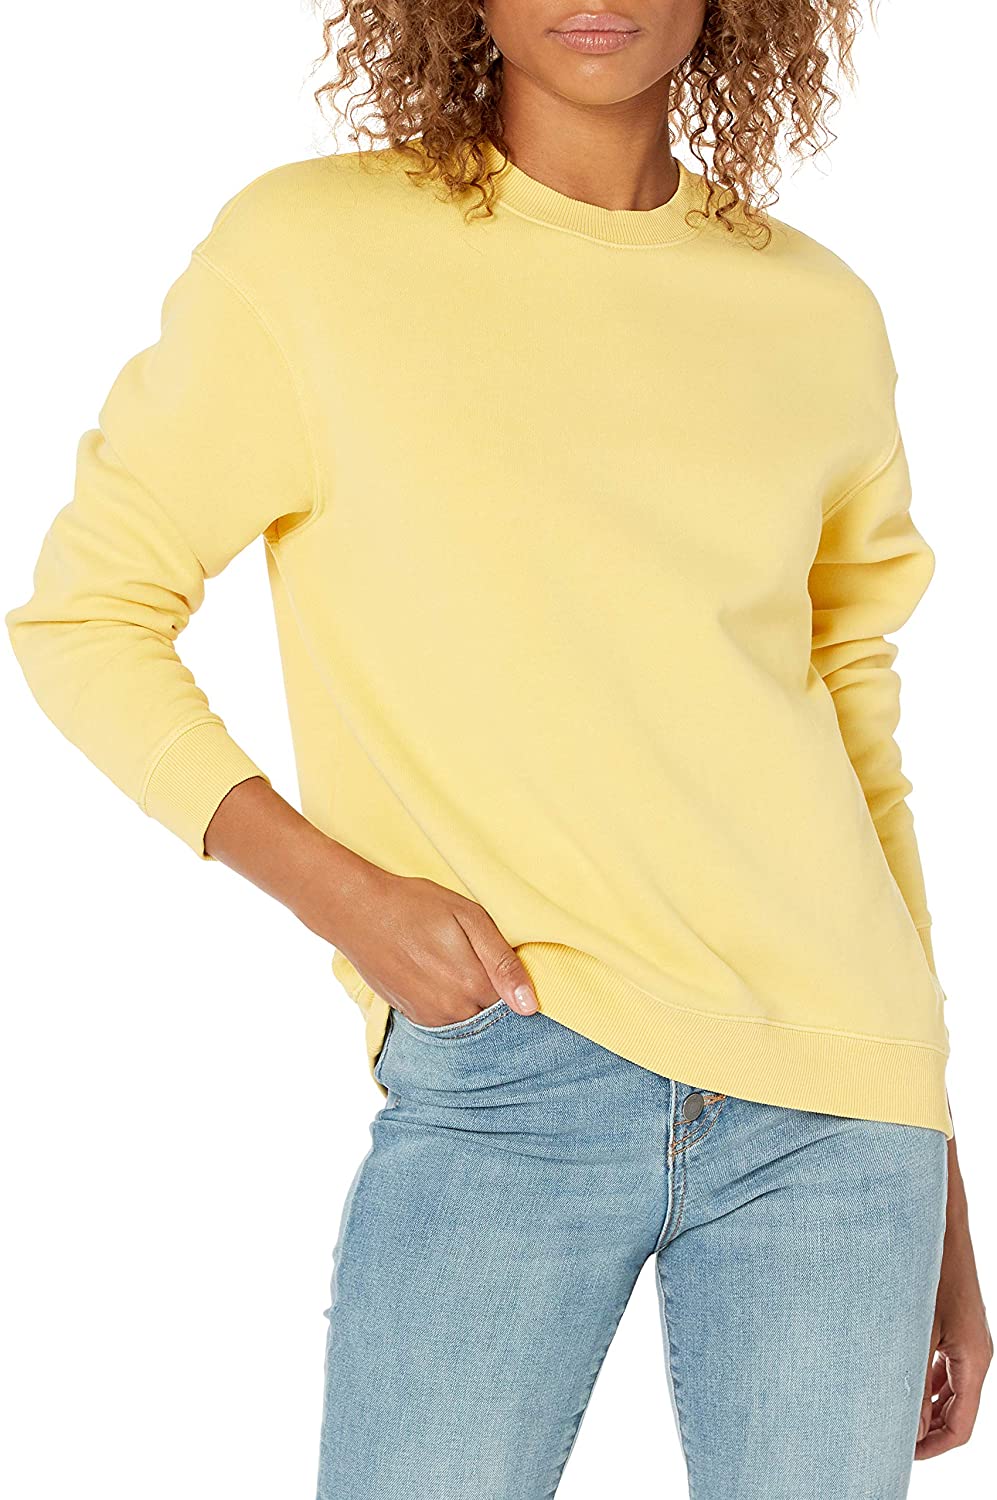 Brand - Goodthreads Women's Heritage Fleece, Lemon Yellow, Size X-Large ...